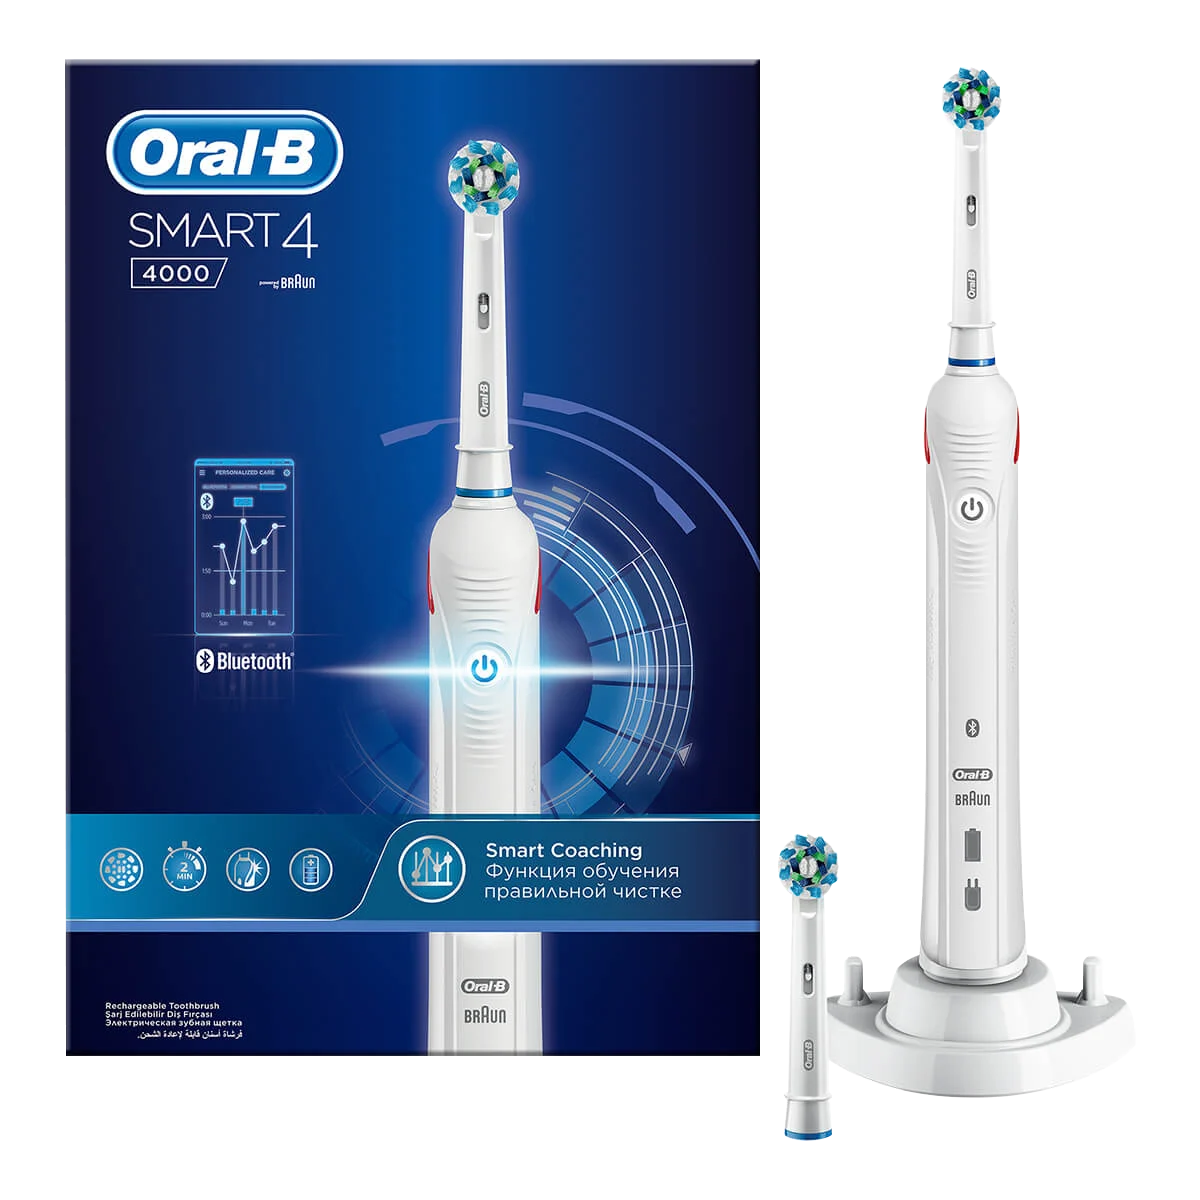 Oral-B Smart 4 4000 White Elektrikli Diş Fırçası, Braun Tarafından Geliştirilmiştir 